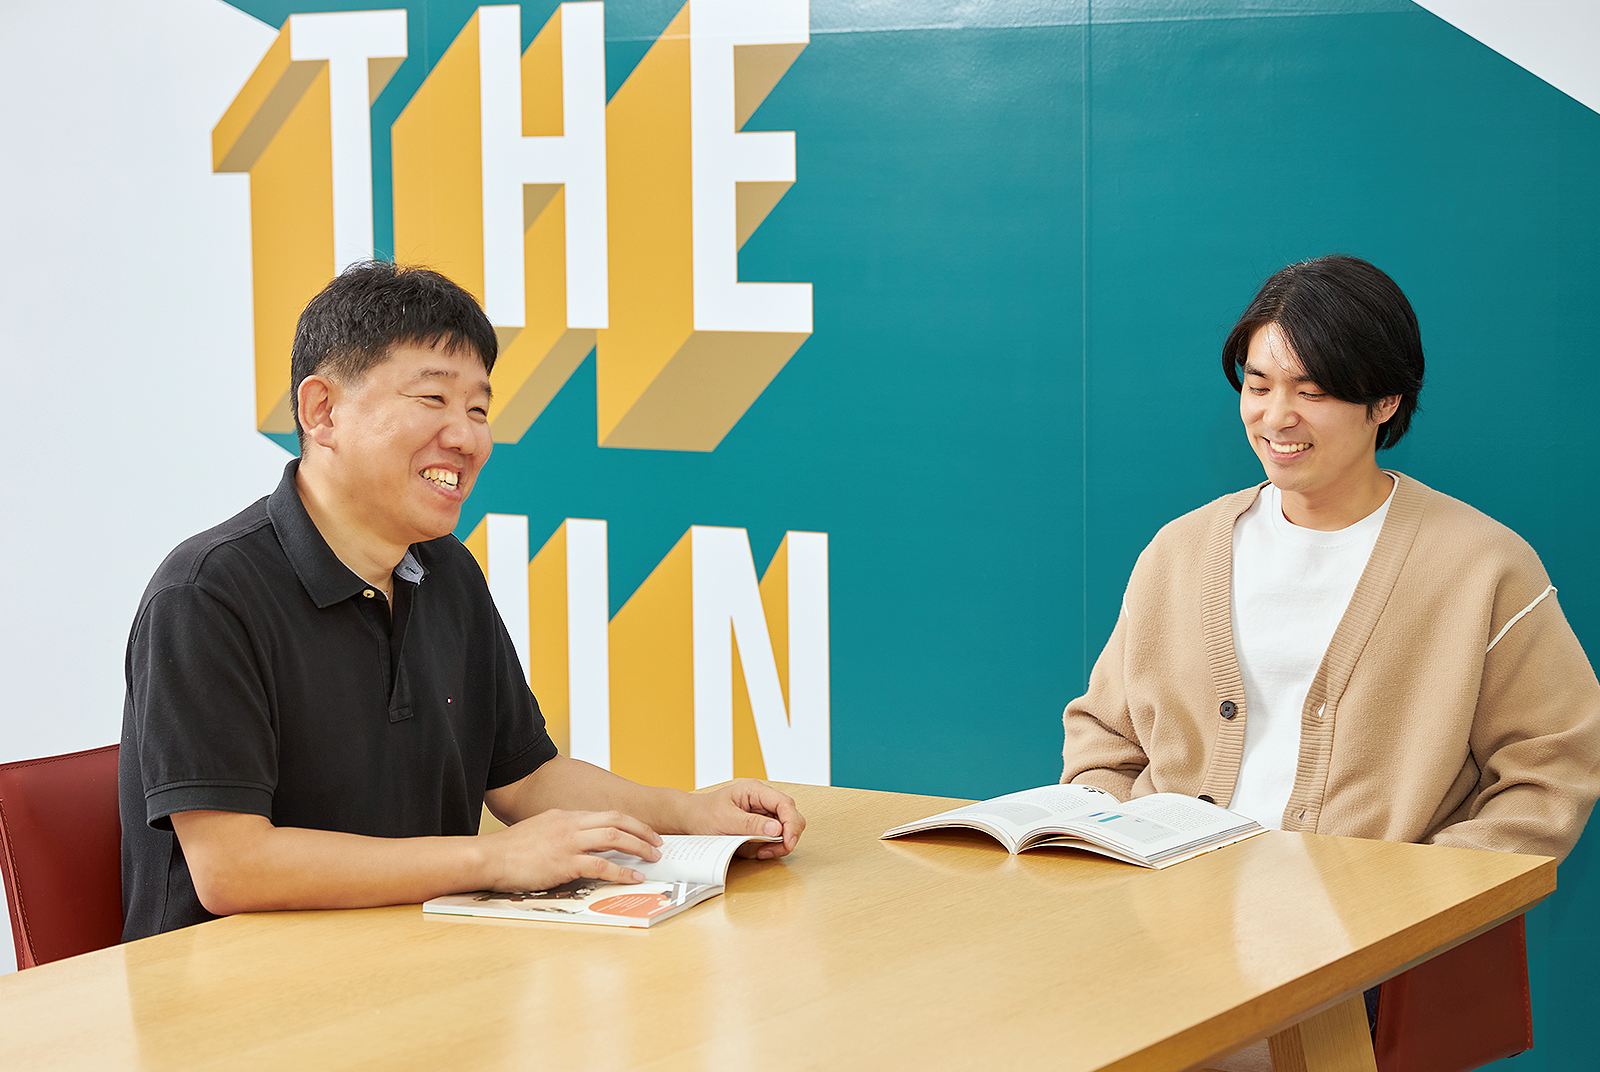 행복과 관련된 에피소드를 이야기하는 김현진 기정(왼쪽)과 들으면서 함께 웃고 있는 서민교 TL(오른쪽) 